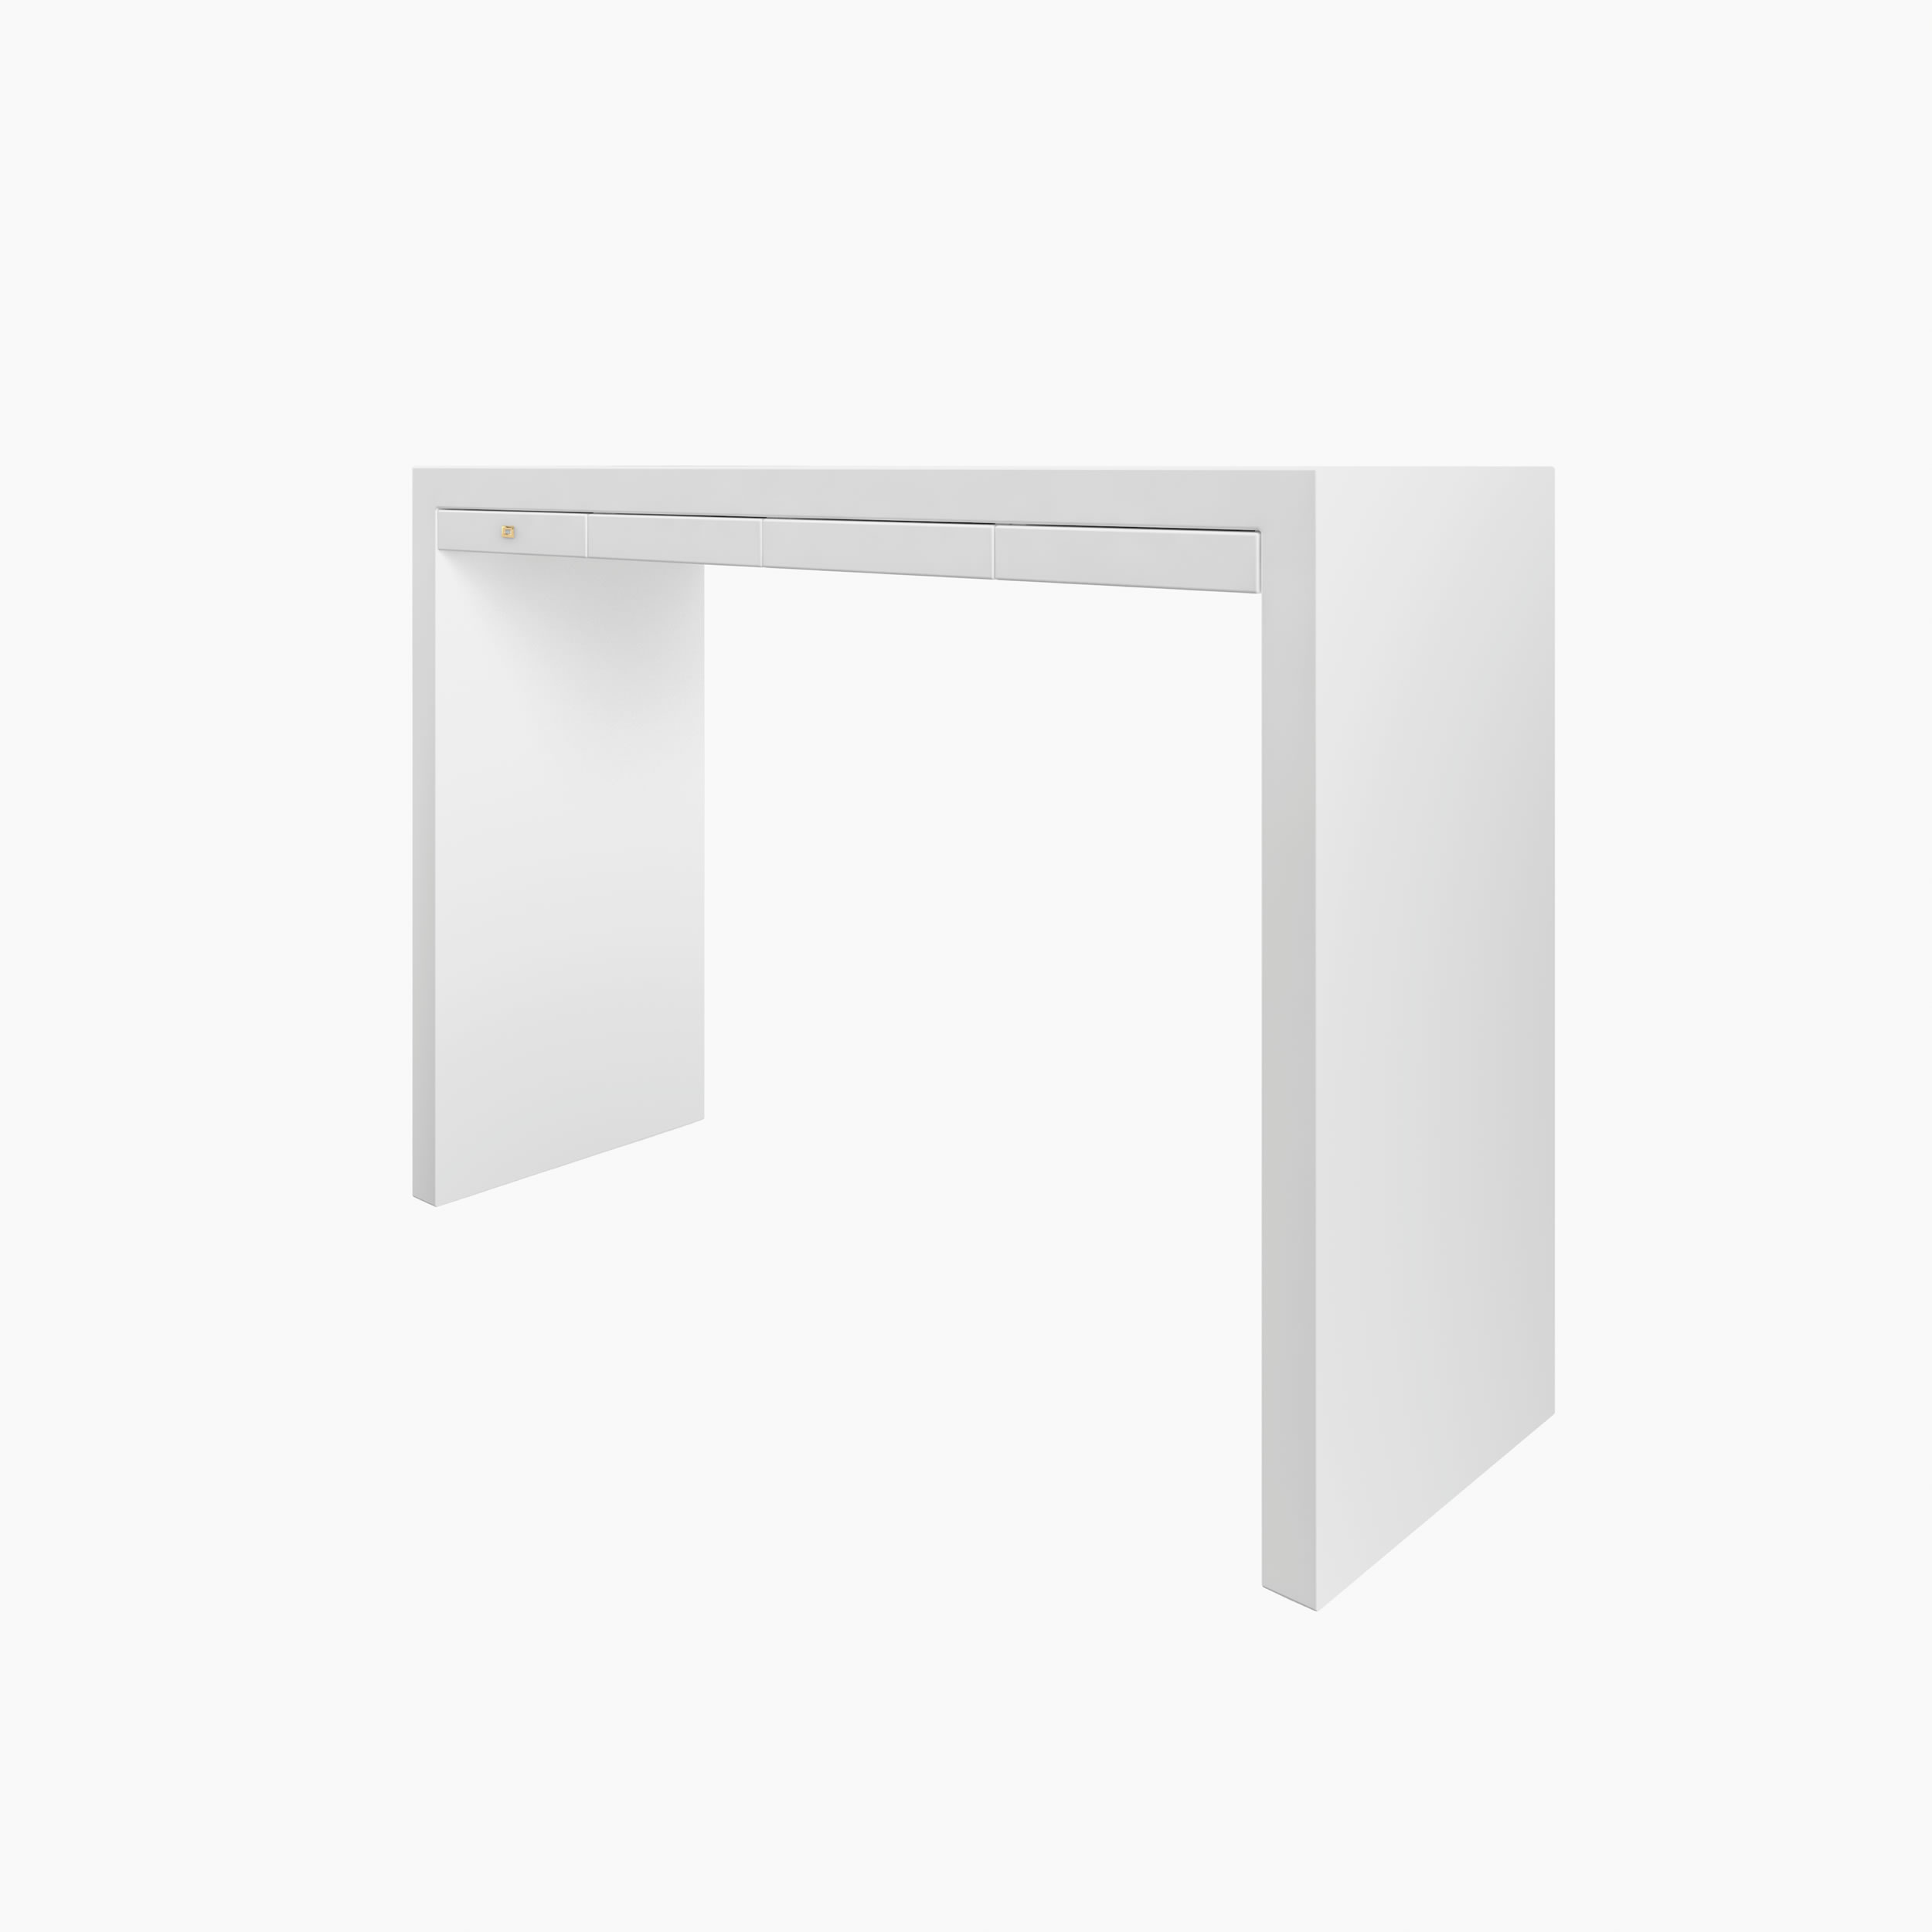 Konsoleig weiss white room Buero sculptural furniture Konsolen FS 26 FELIX SCHWAKE